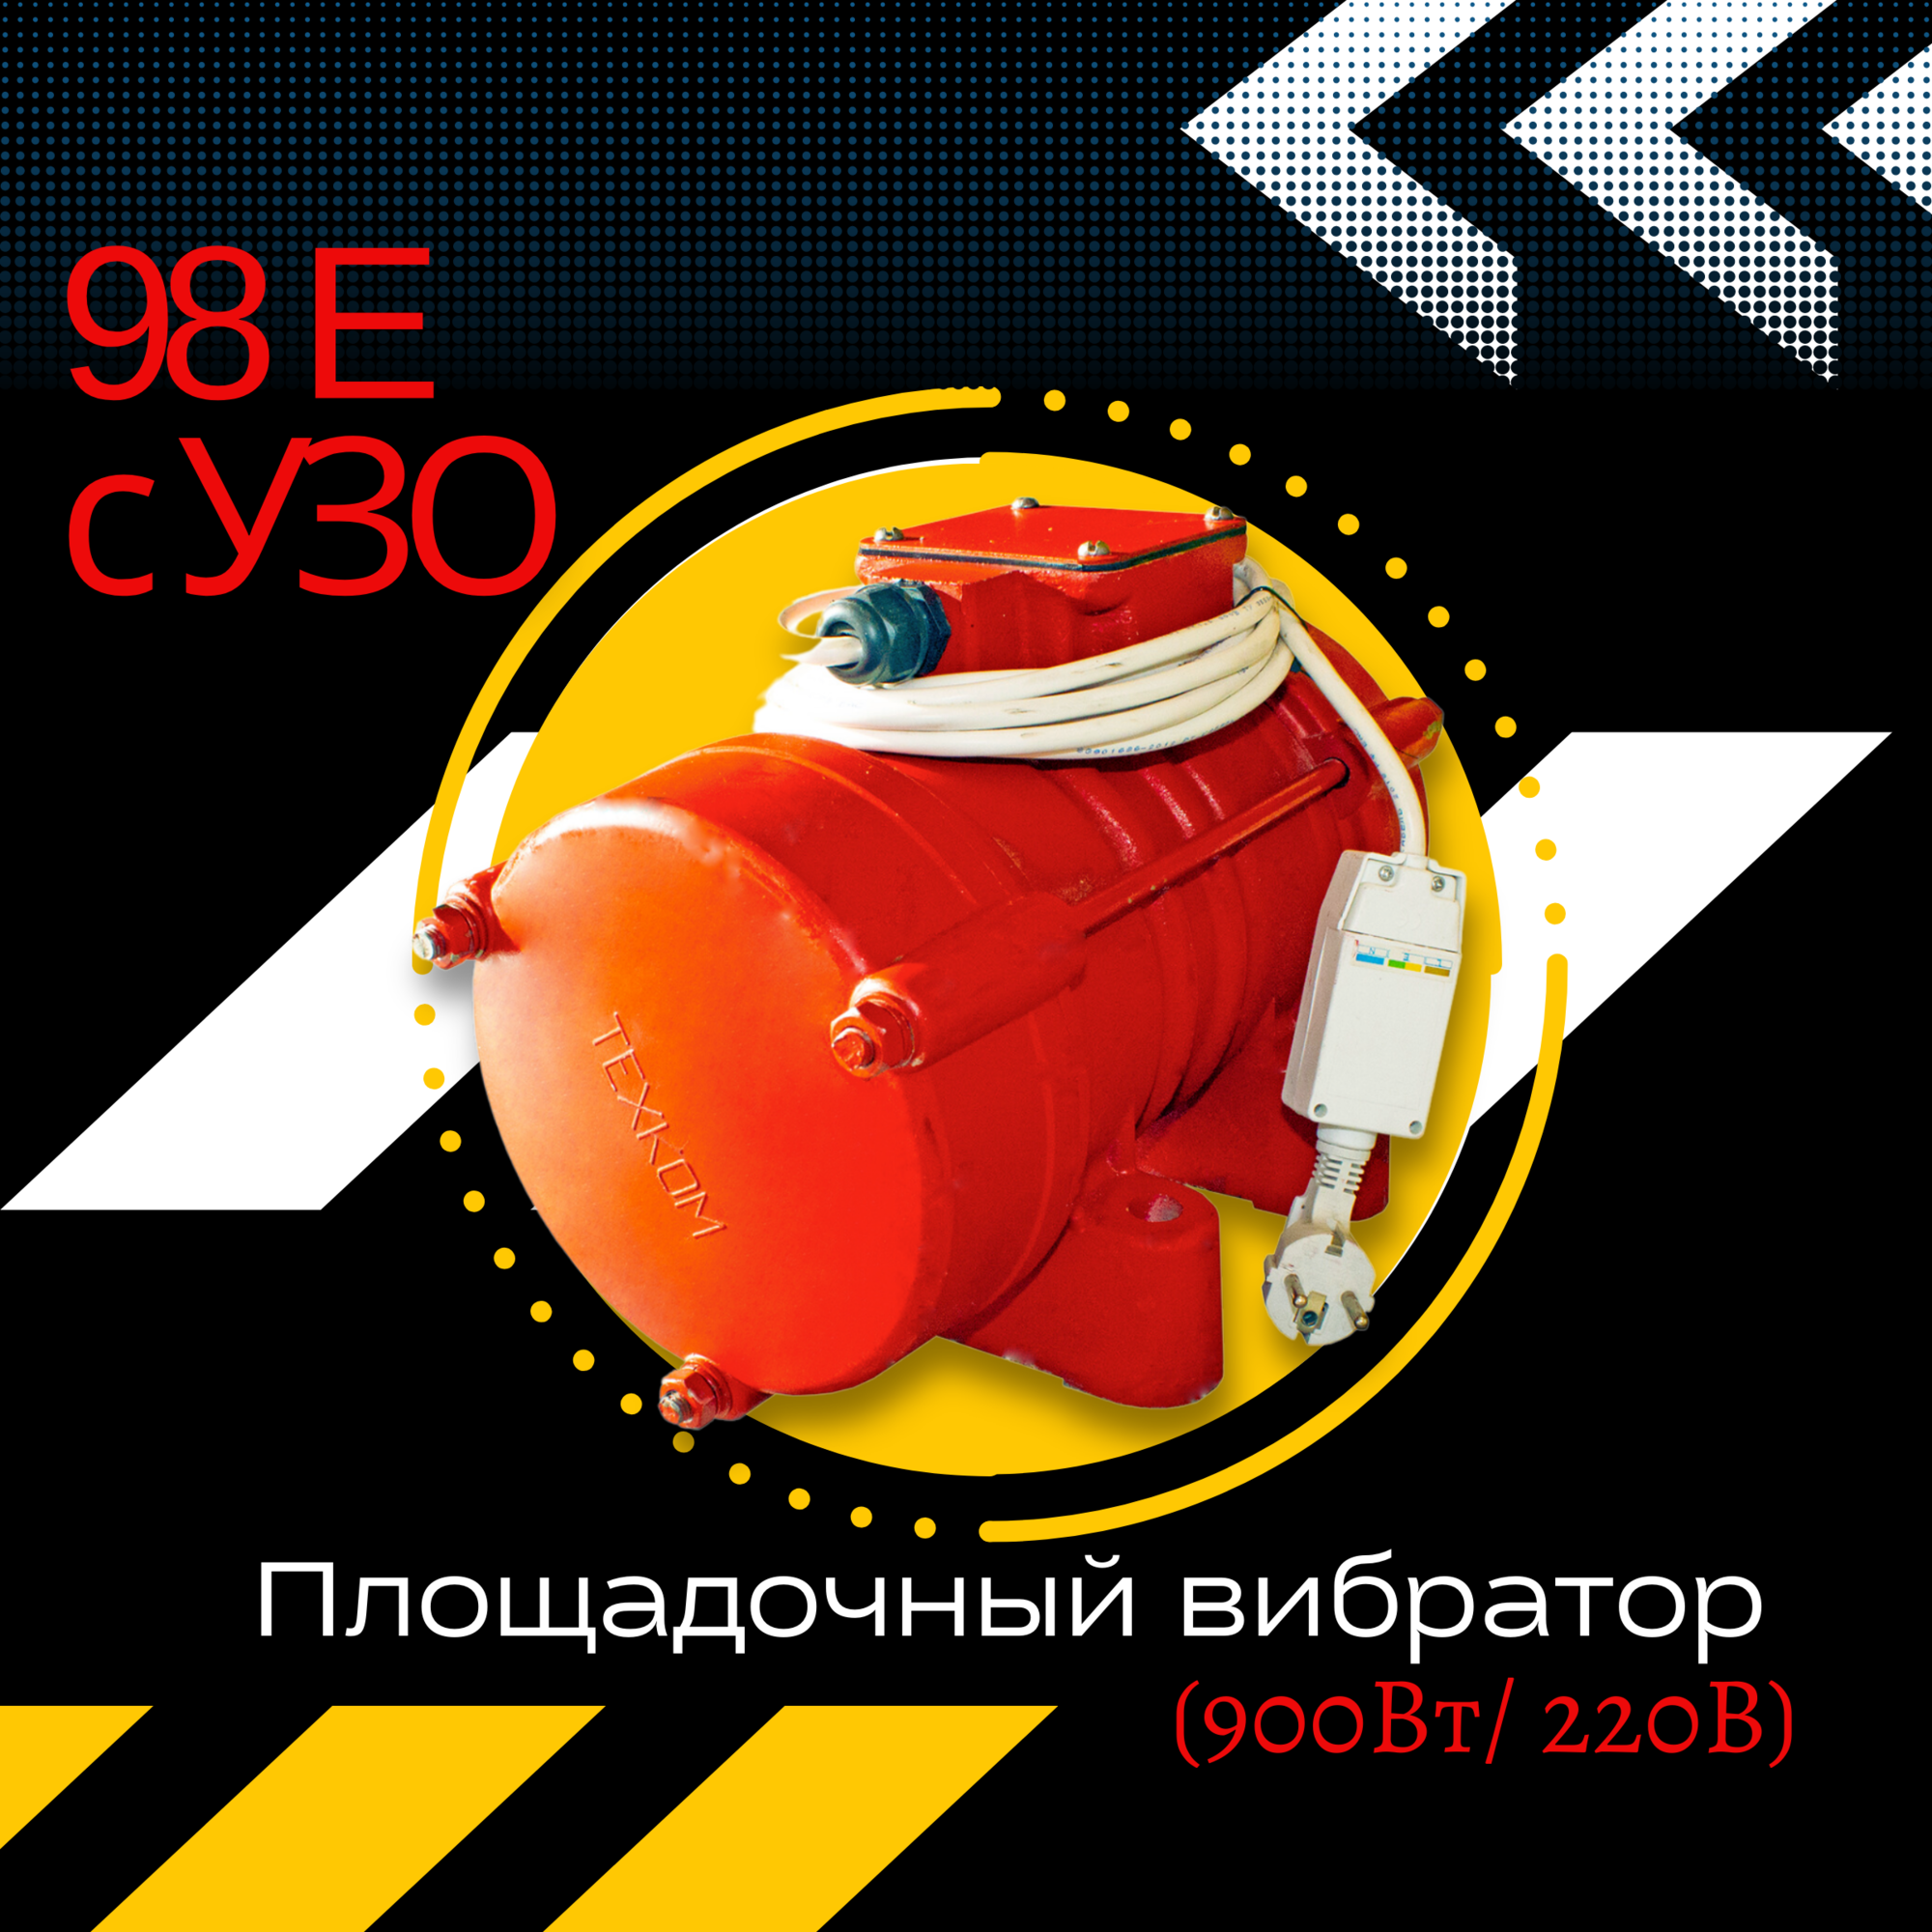 Площадочный вибратор ЭВ-98Е с УЗО (900 Вт/ 220 В)